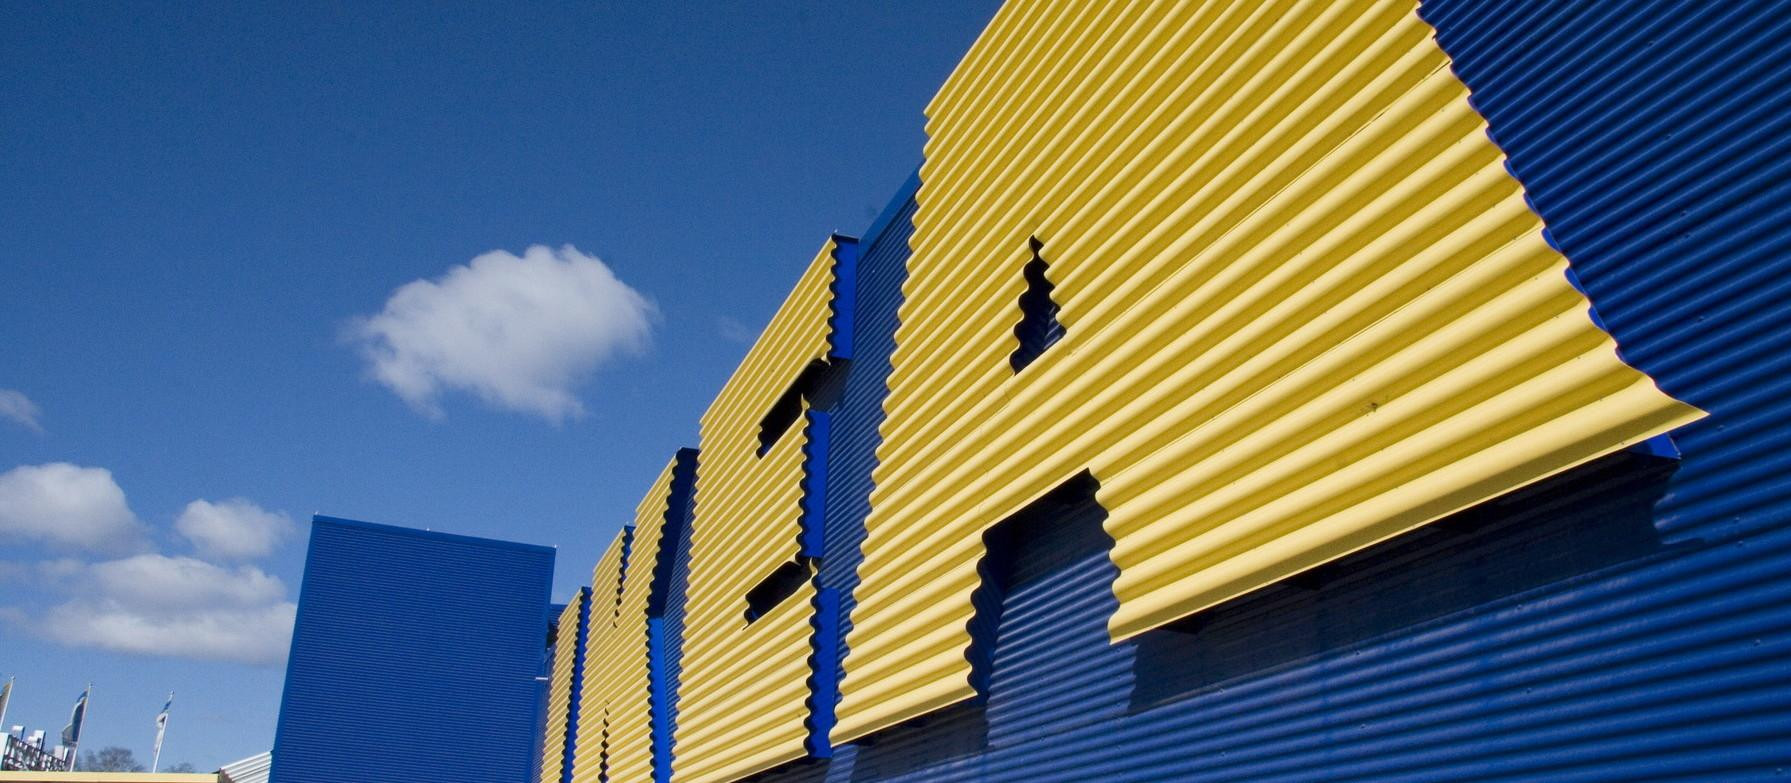 Fachada de uno de los grandes almacenes de Ikea, en los que apuesta por la sostenibilidad / CG